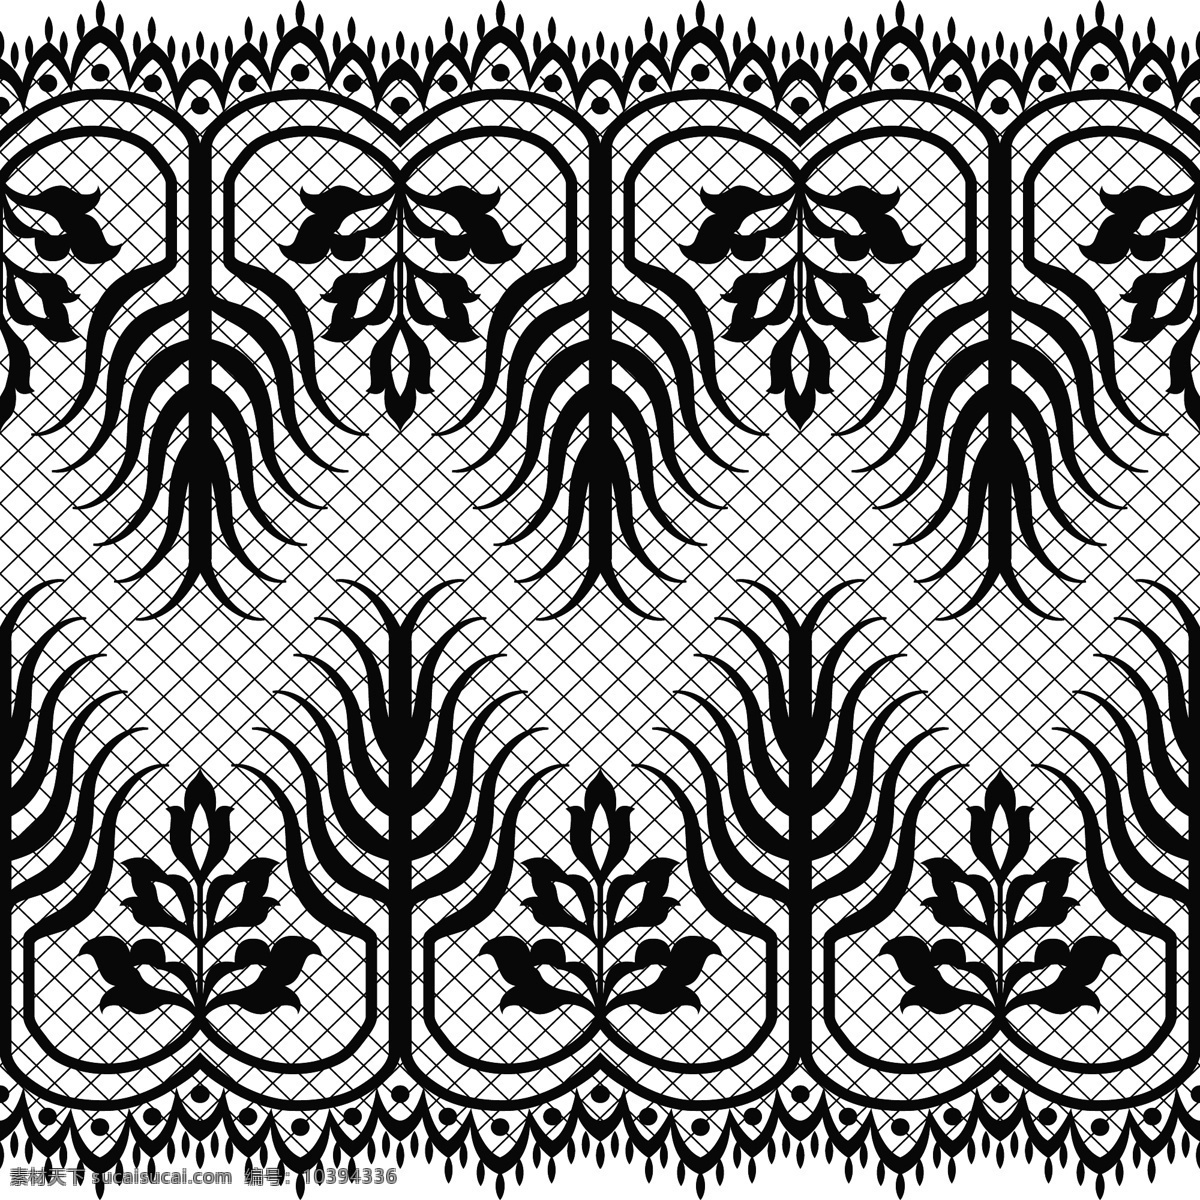 黑色 手绘 植物 图案 纹样 矢量 矢量素材 设计素材 背景素材